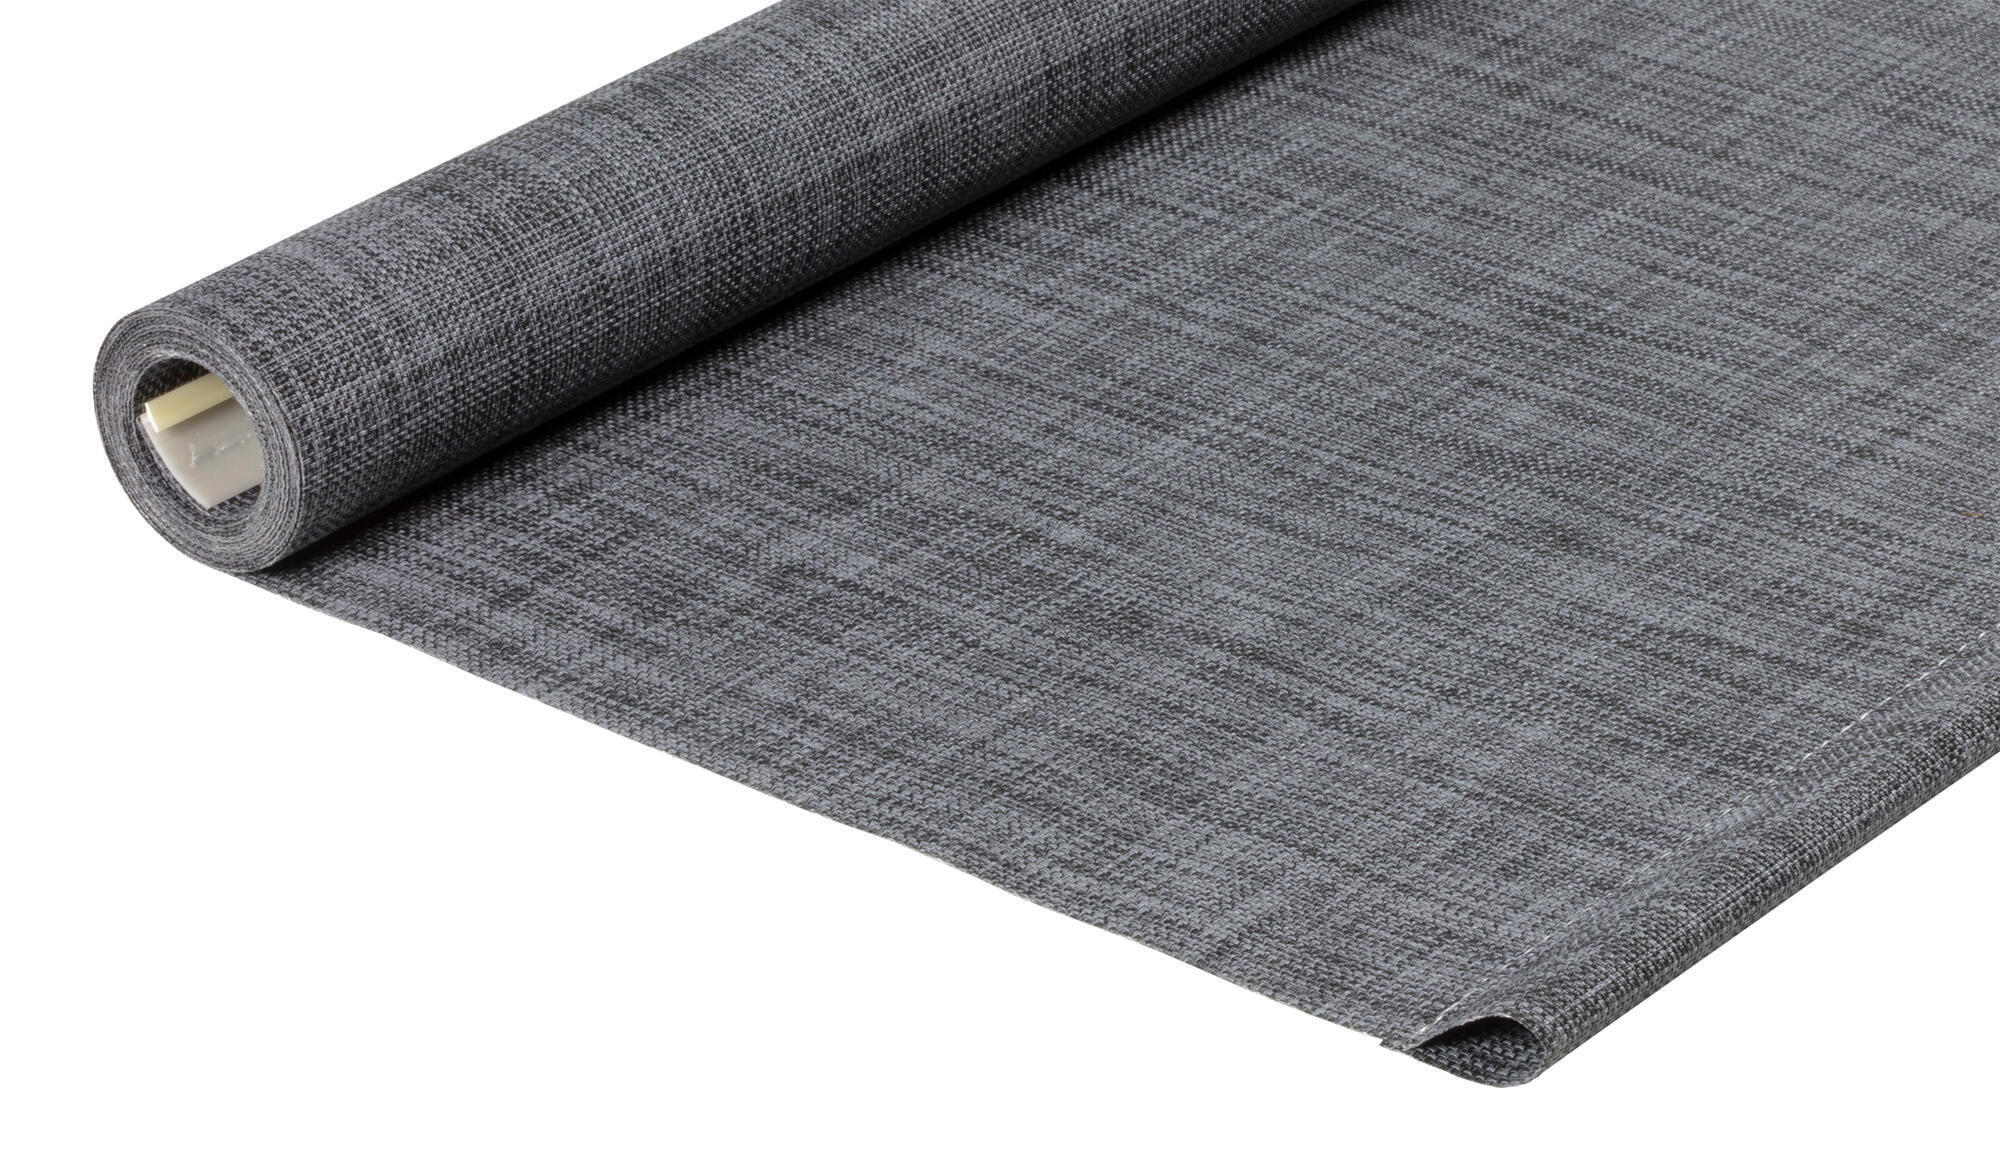 Tessuto per tende a rullo filtrante INSPIRE Puebla grigio / argento 160.8 x 250 cm - 3